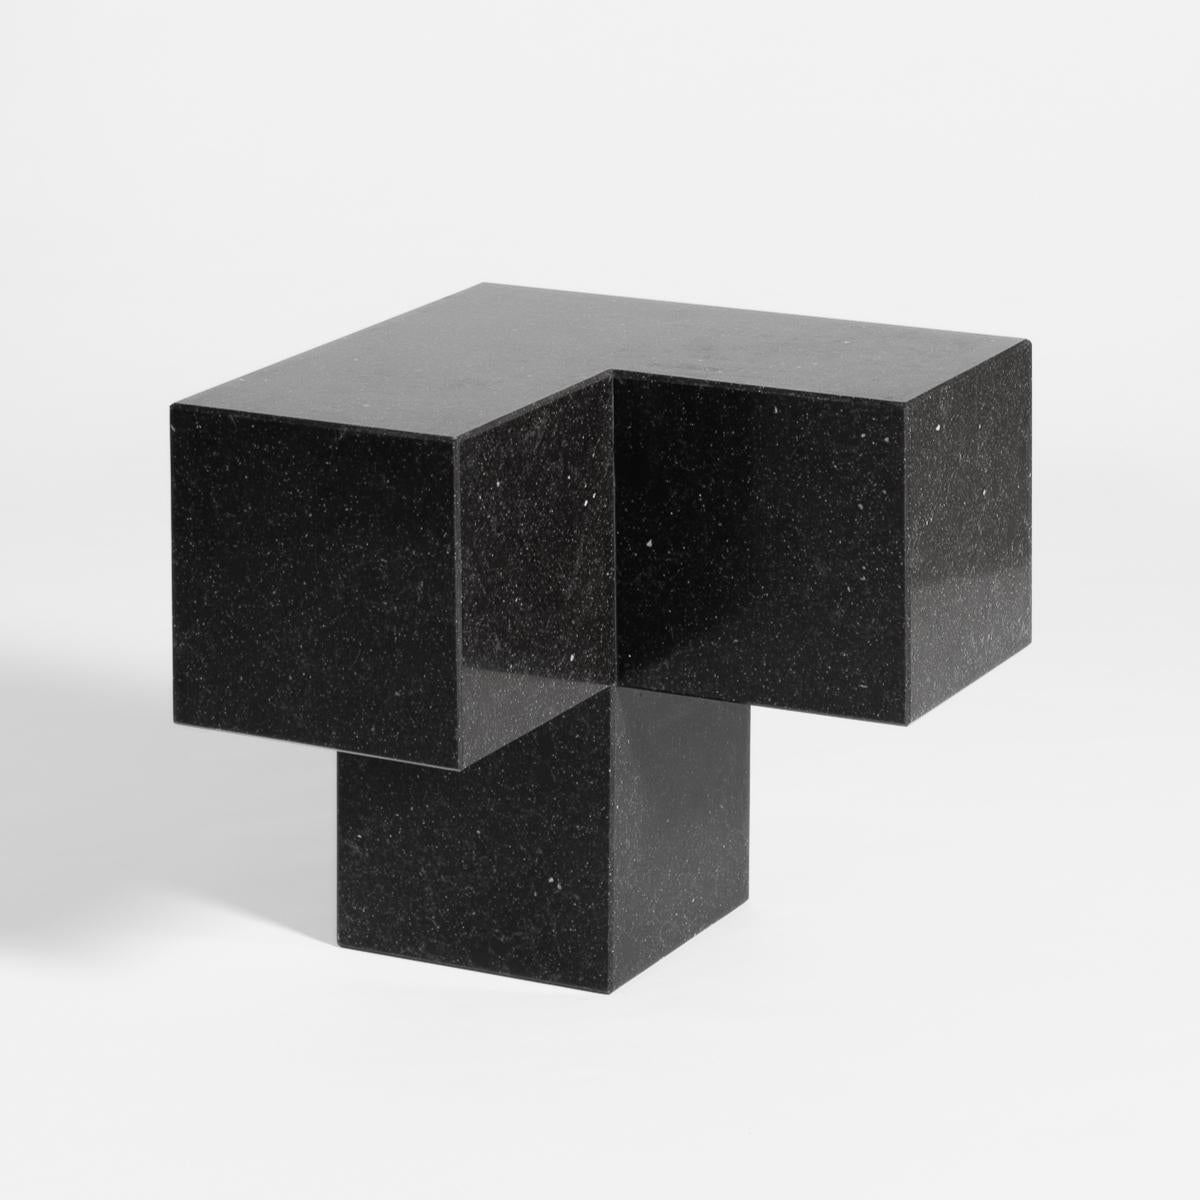 Voxel L - Table basse et d'appoint en pierre de quartz moderne du 21e siècle en calcaire

En infographie, un voxel représente une valeur dans une grille régulière d'un espace tridimensionnel. Du particulier au tout, nous partons d'une unité qui se